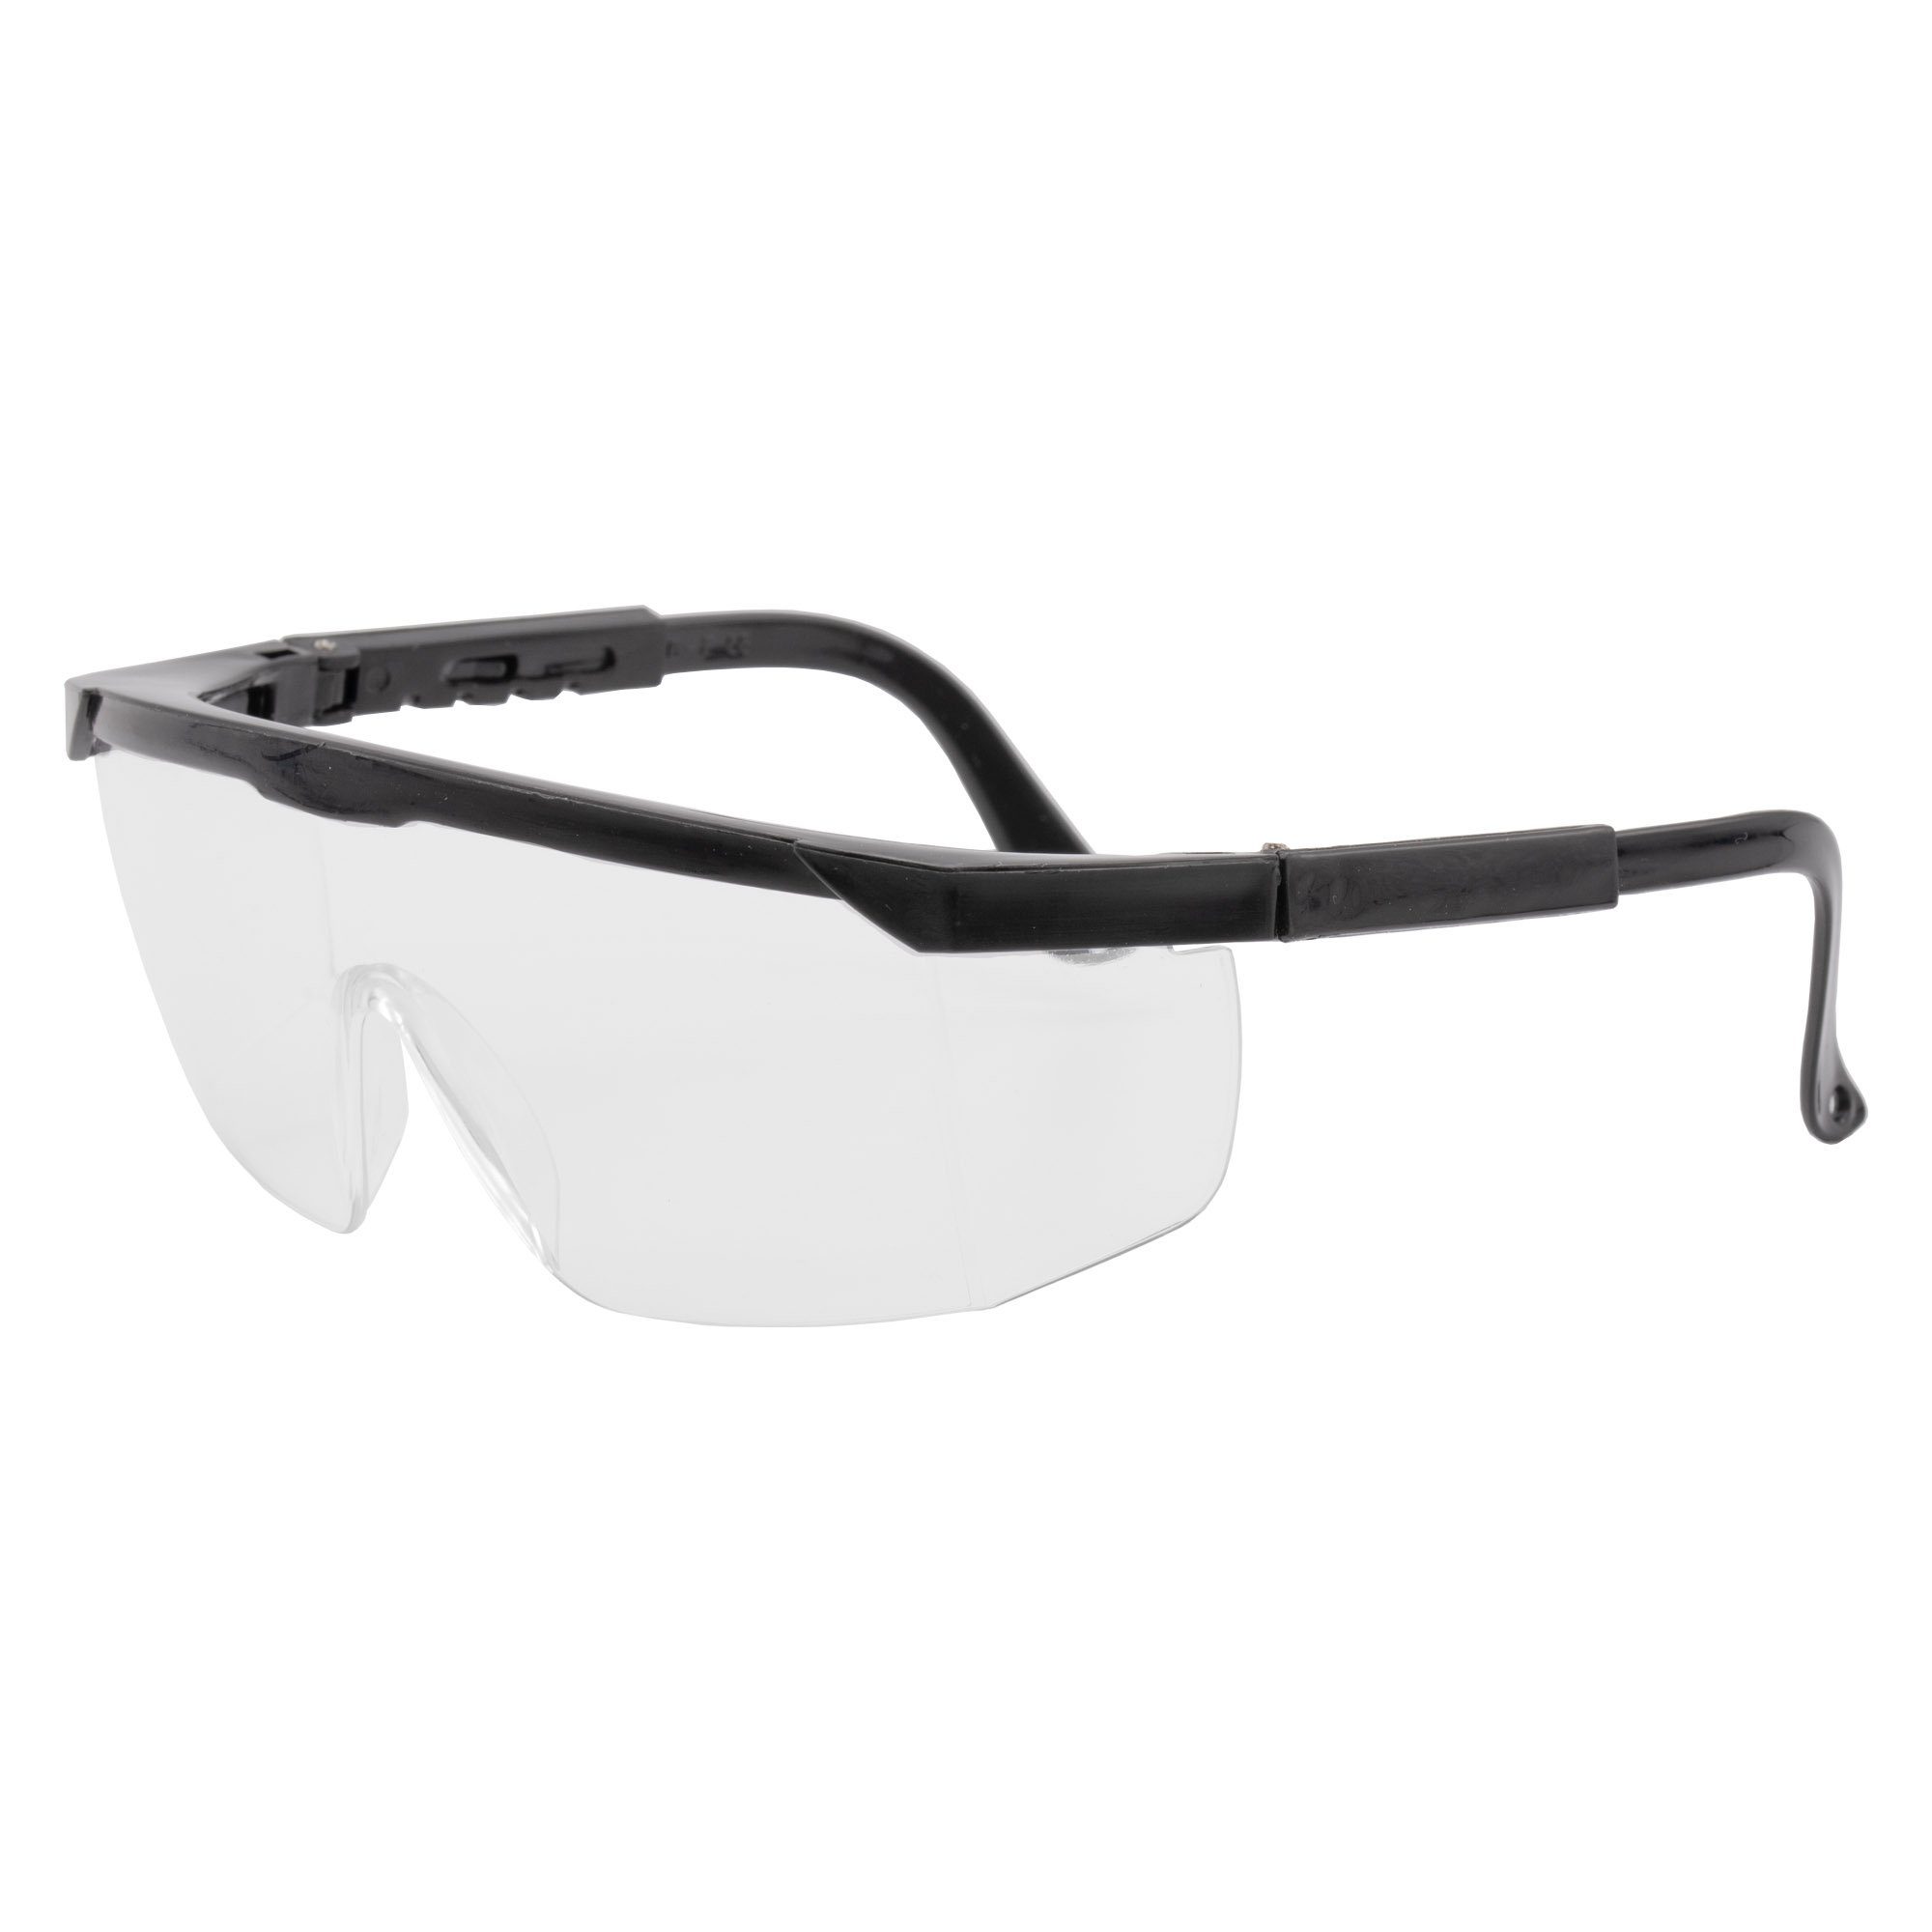 Arbeitsschutzbrille, Top, Augenschutz Arbeitsschutzbrille conkor Sicherheitsbrille Schutzbrille Arbeitsbrille